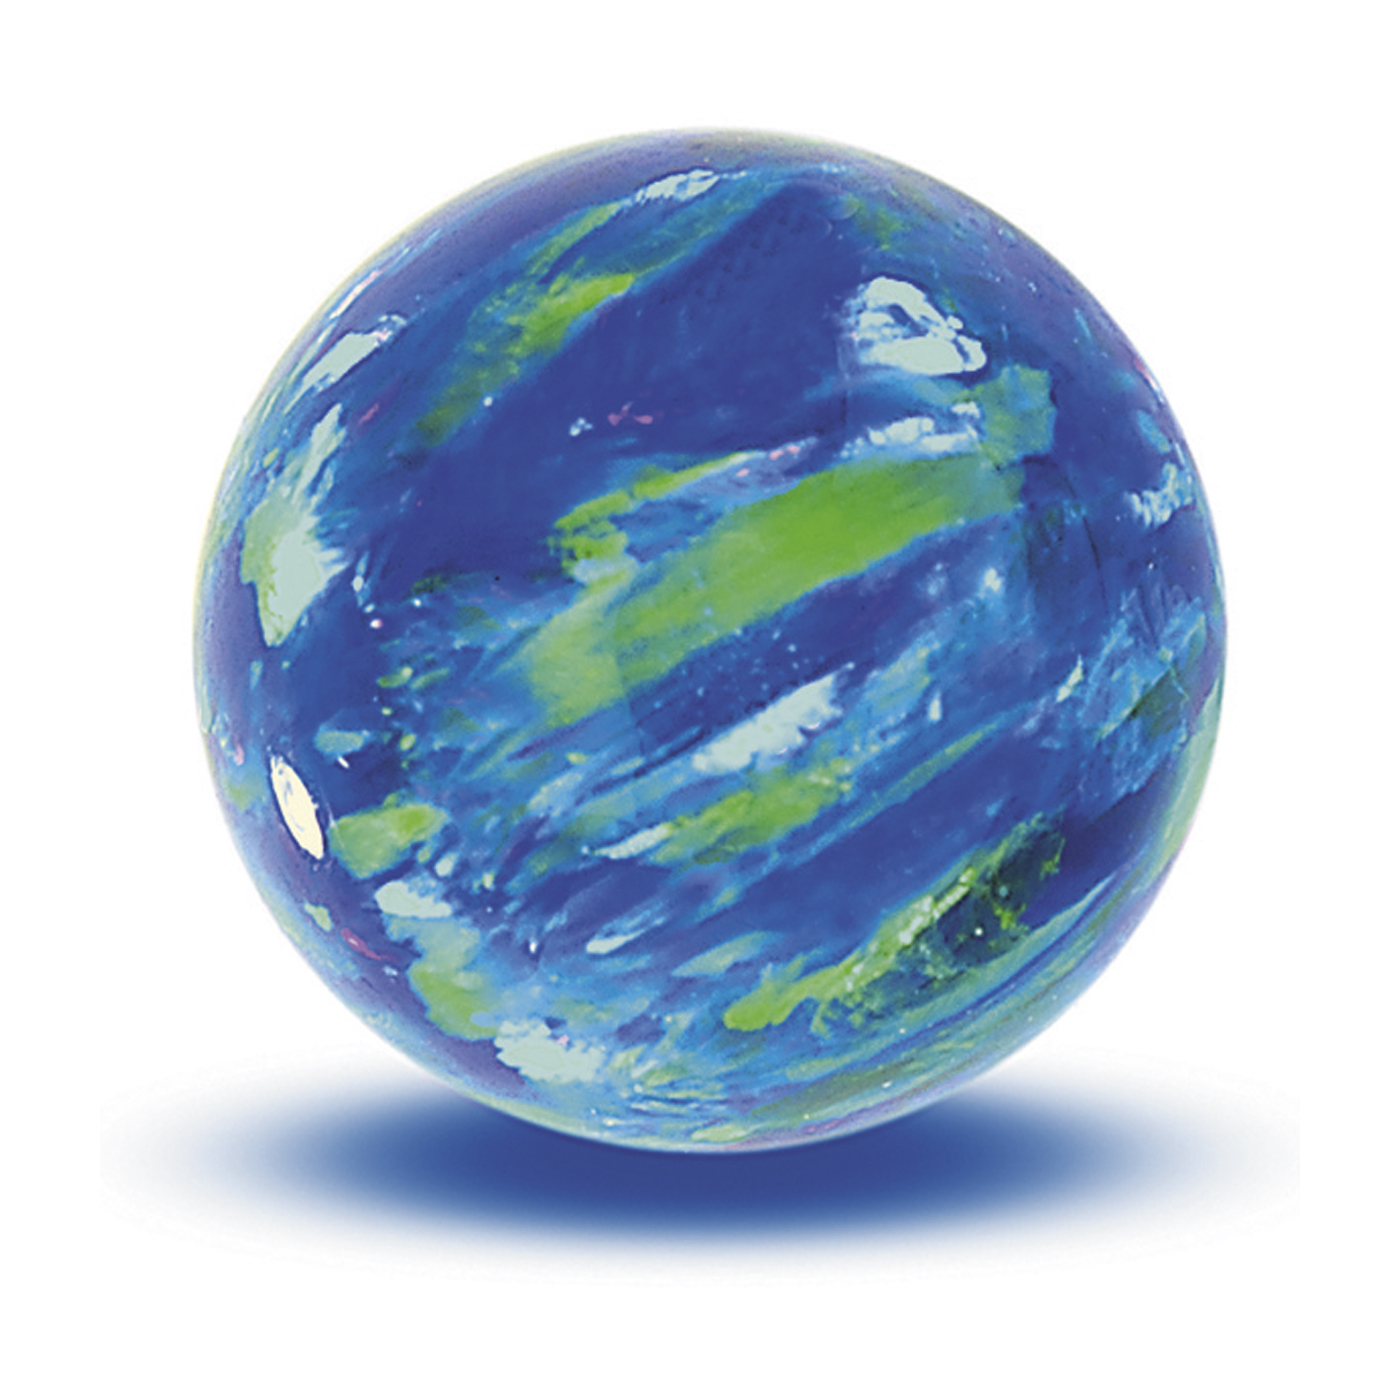 Opal Imitation Ball, Cyan, ø 8 mm, Drilled Through - 1 piece